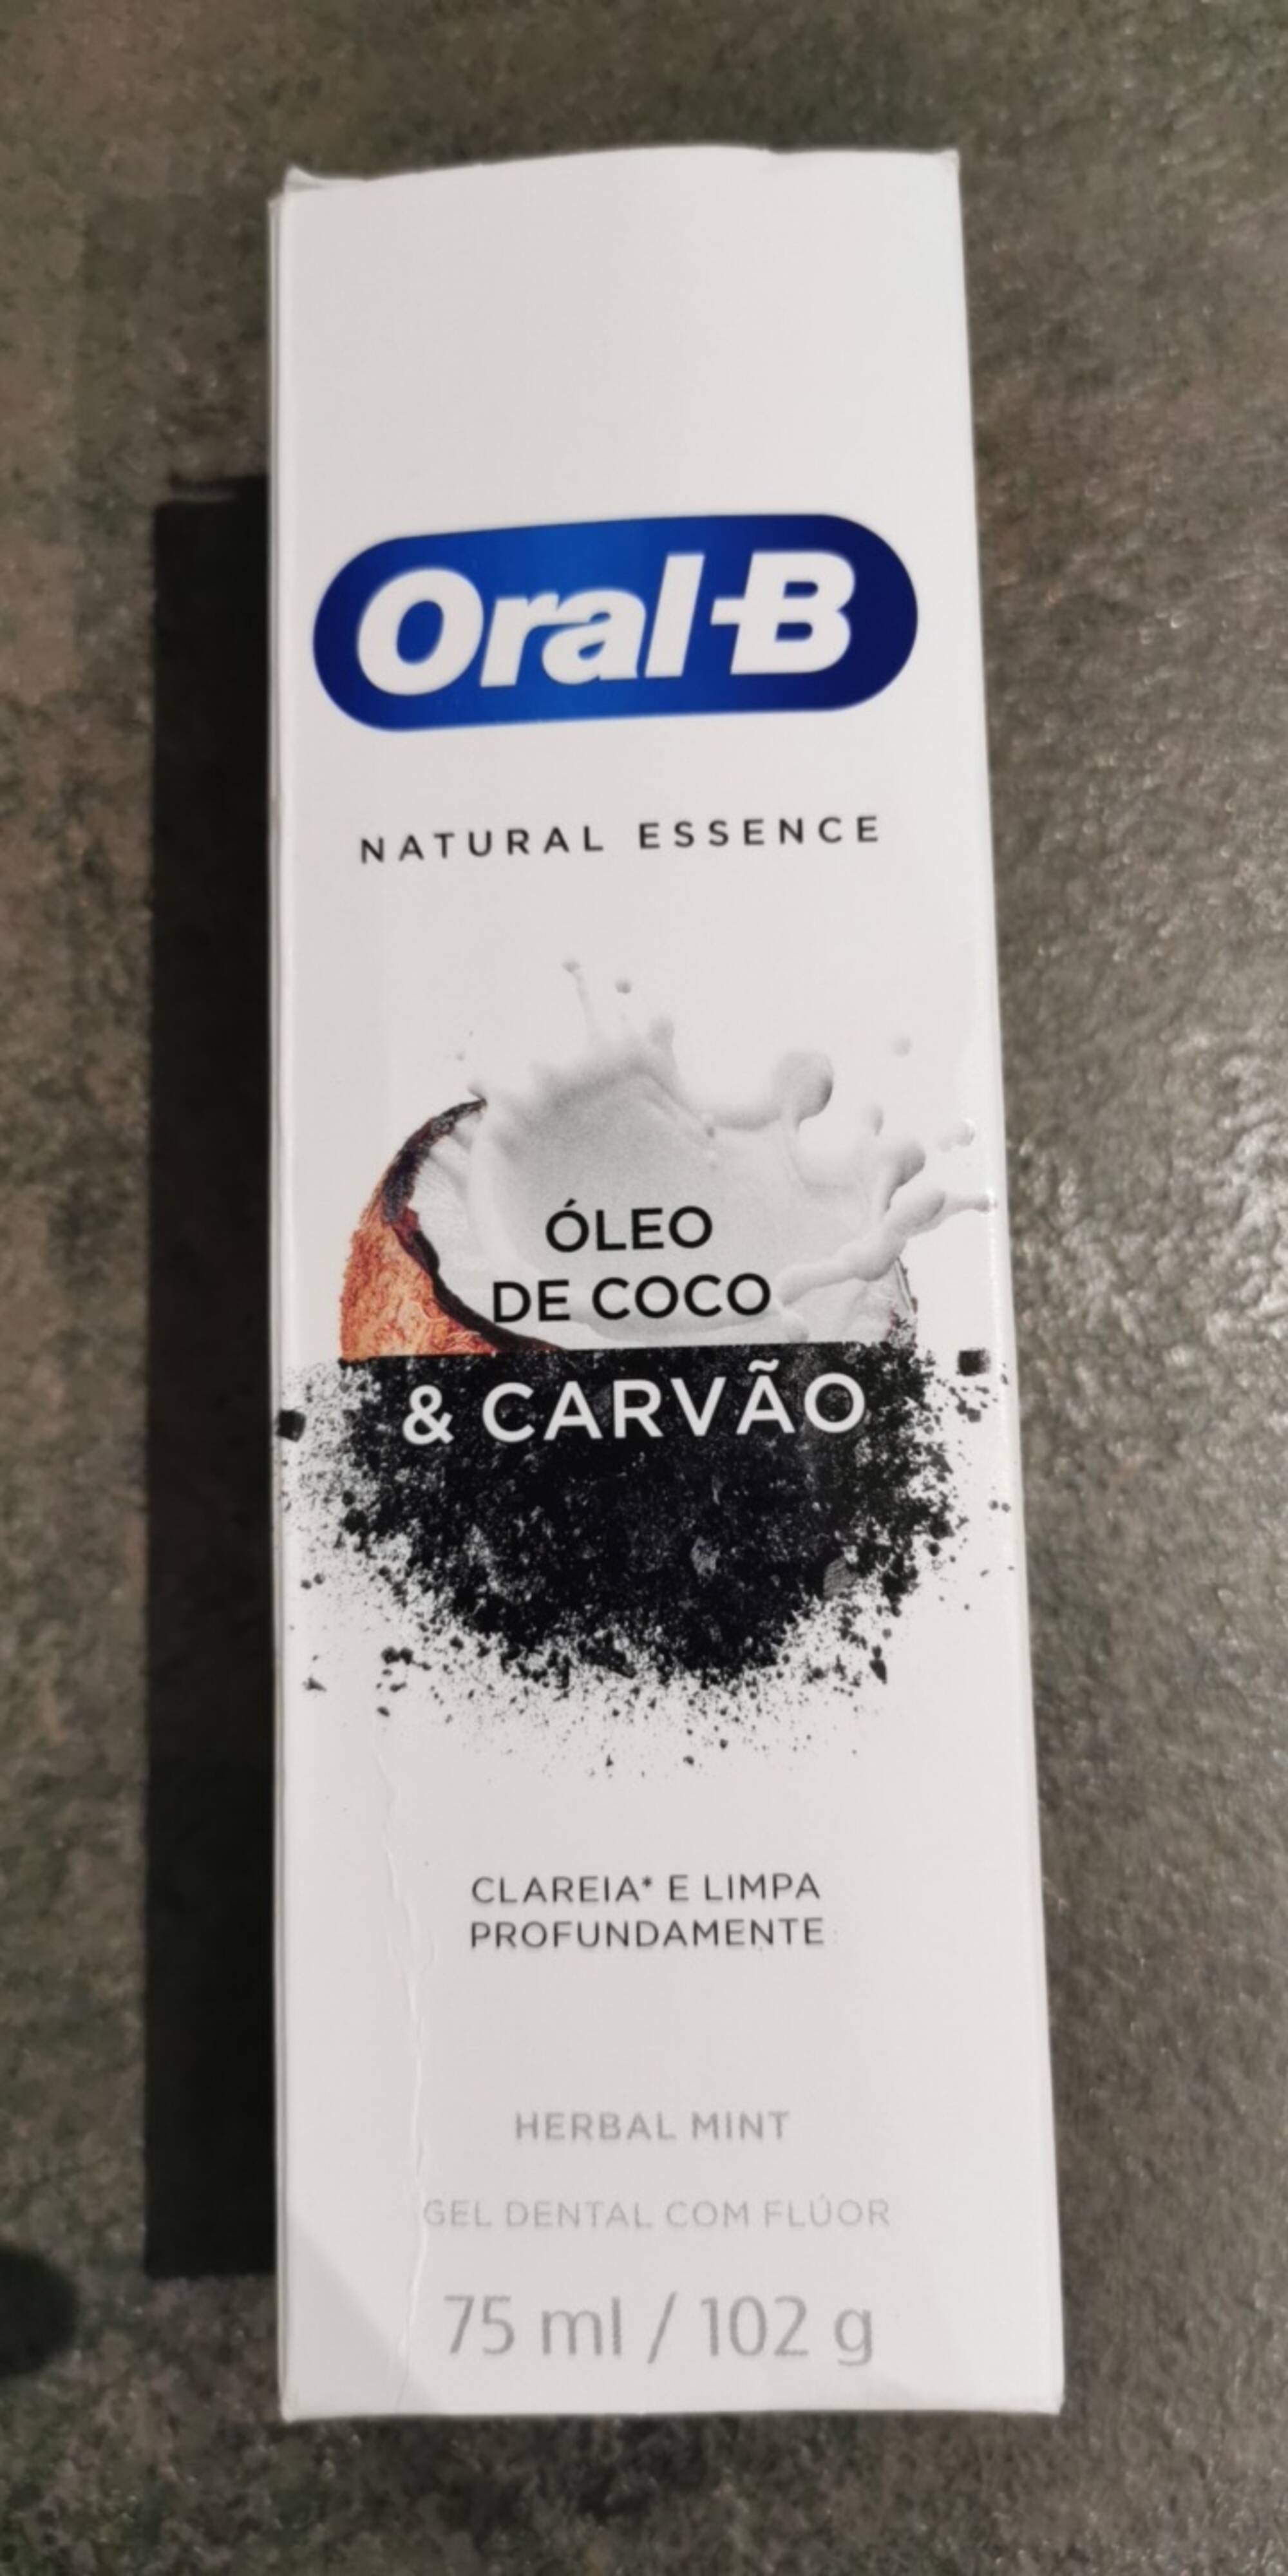 ORAL-B - Óleo de coco & carvão - Gel dental com fluor